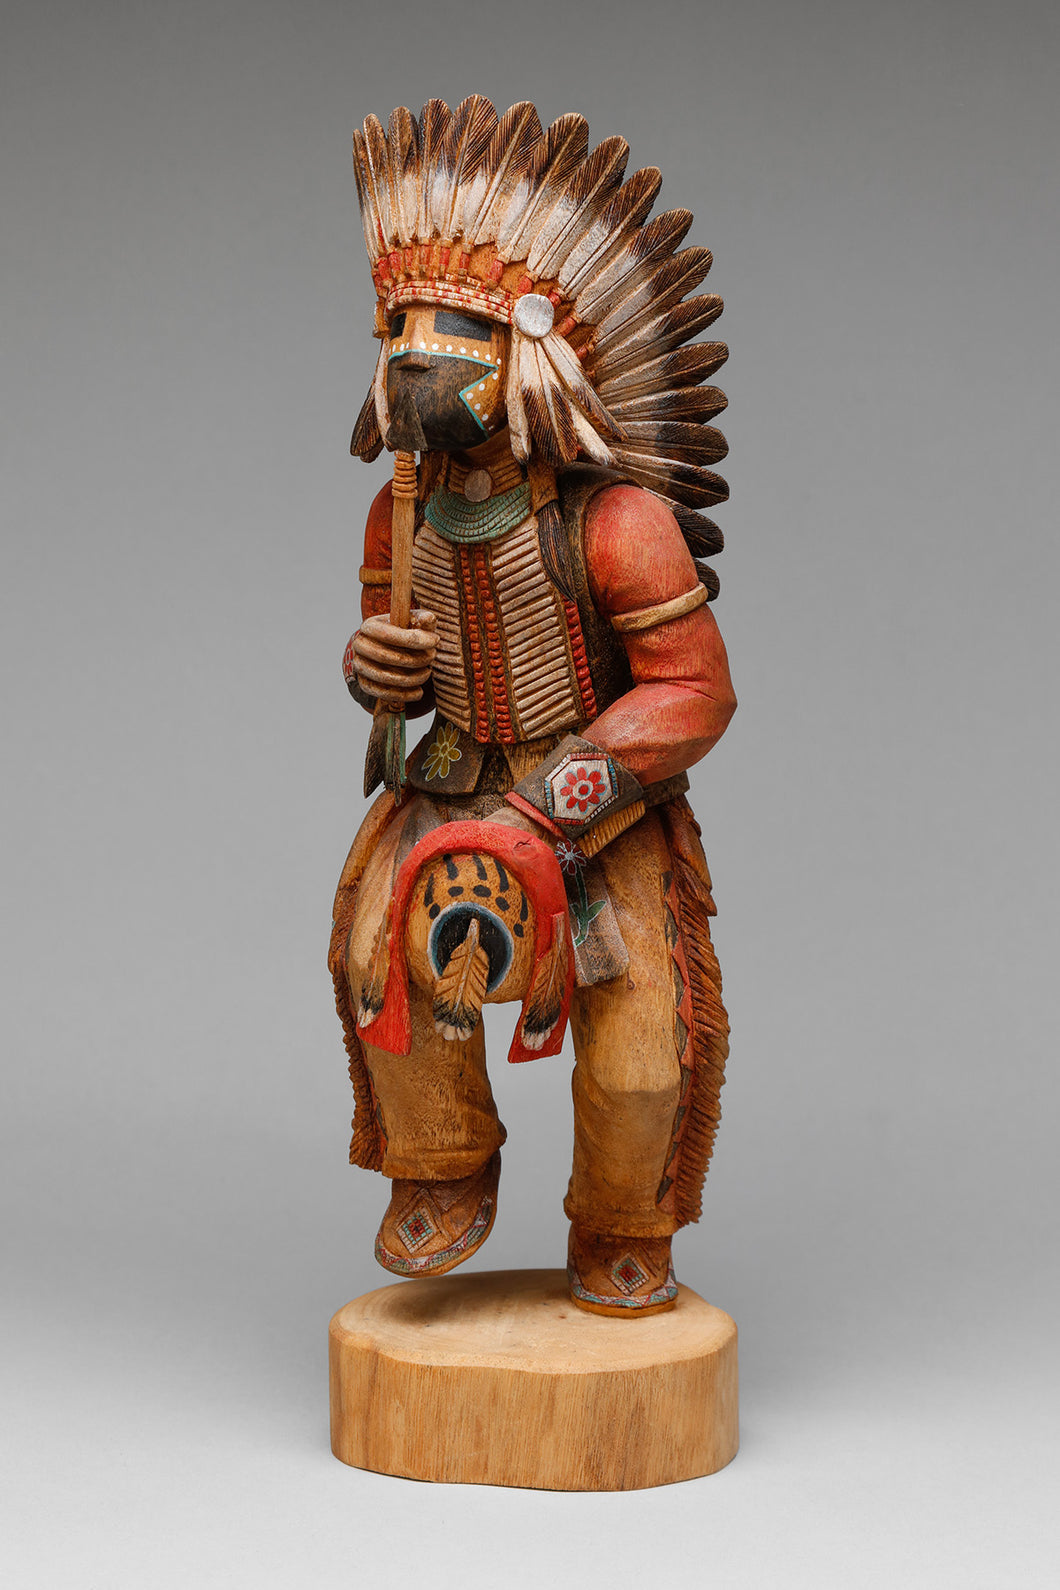 Comanche Land Protector Carving by Bryce Quamahongnewa, Hopi